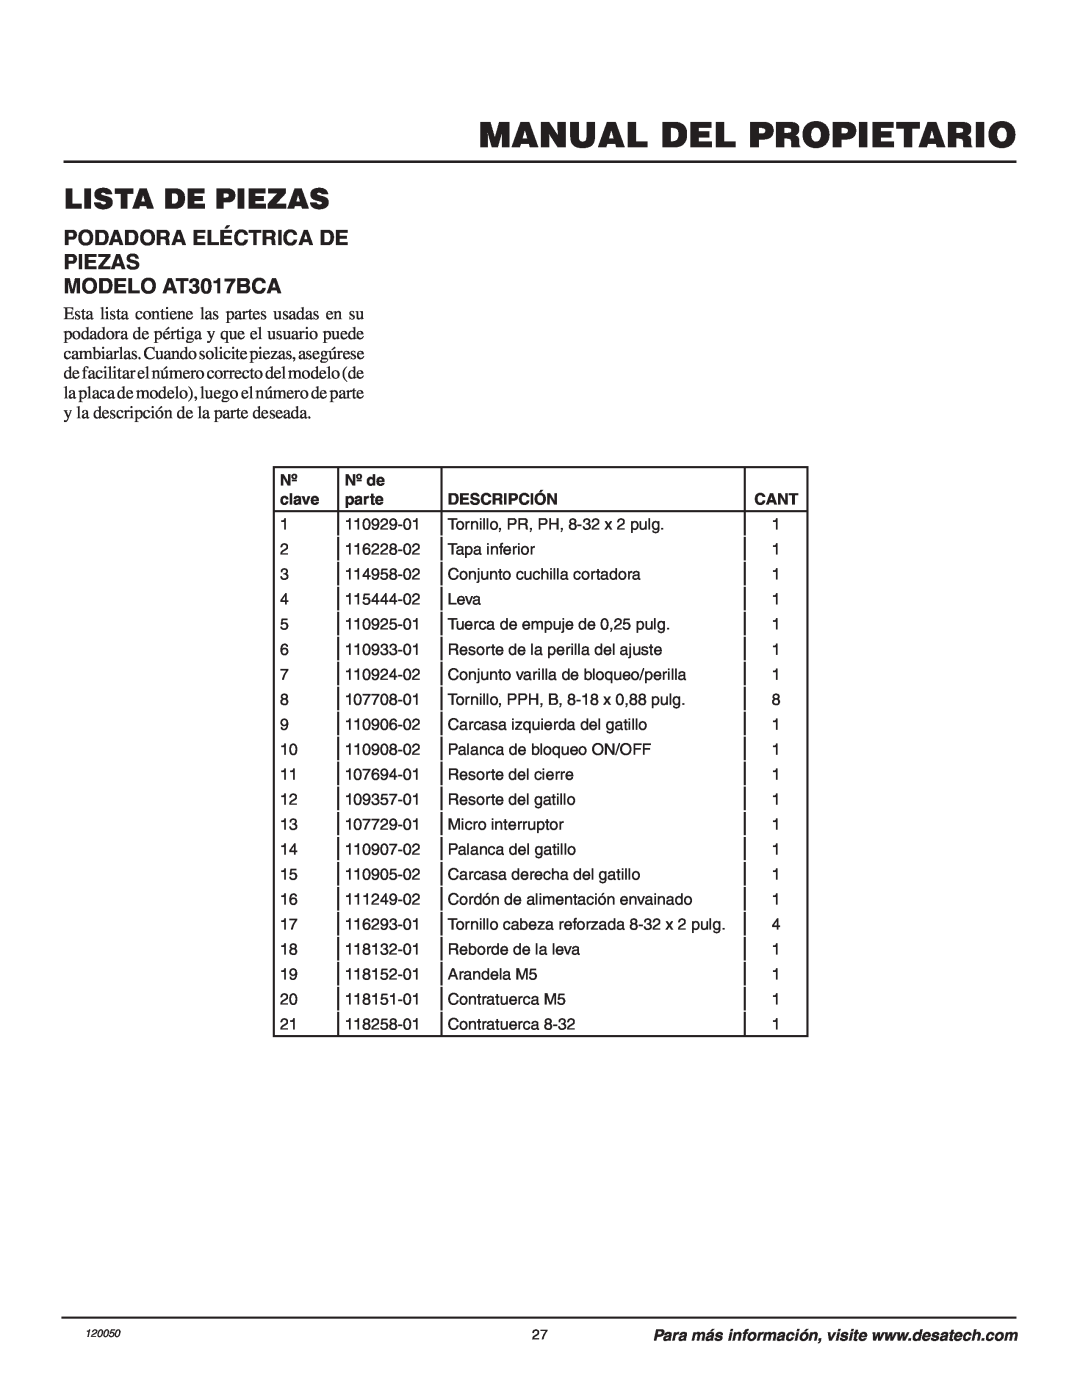 Remington owner manual Lista De Piezas, Manual Del Propietario, PODADORA ELÉCTRICA DE PIEZAS MODELO AT3017BCA 